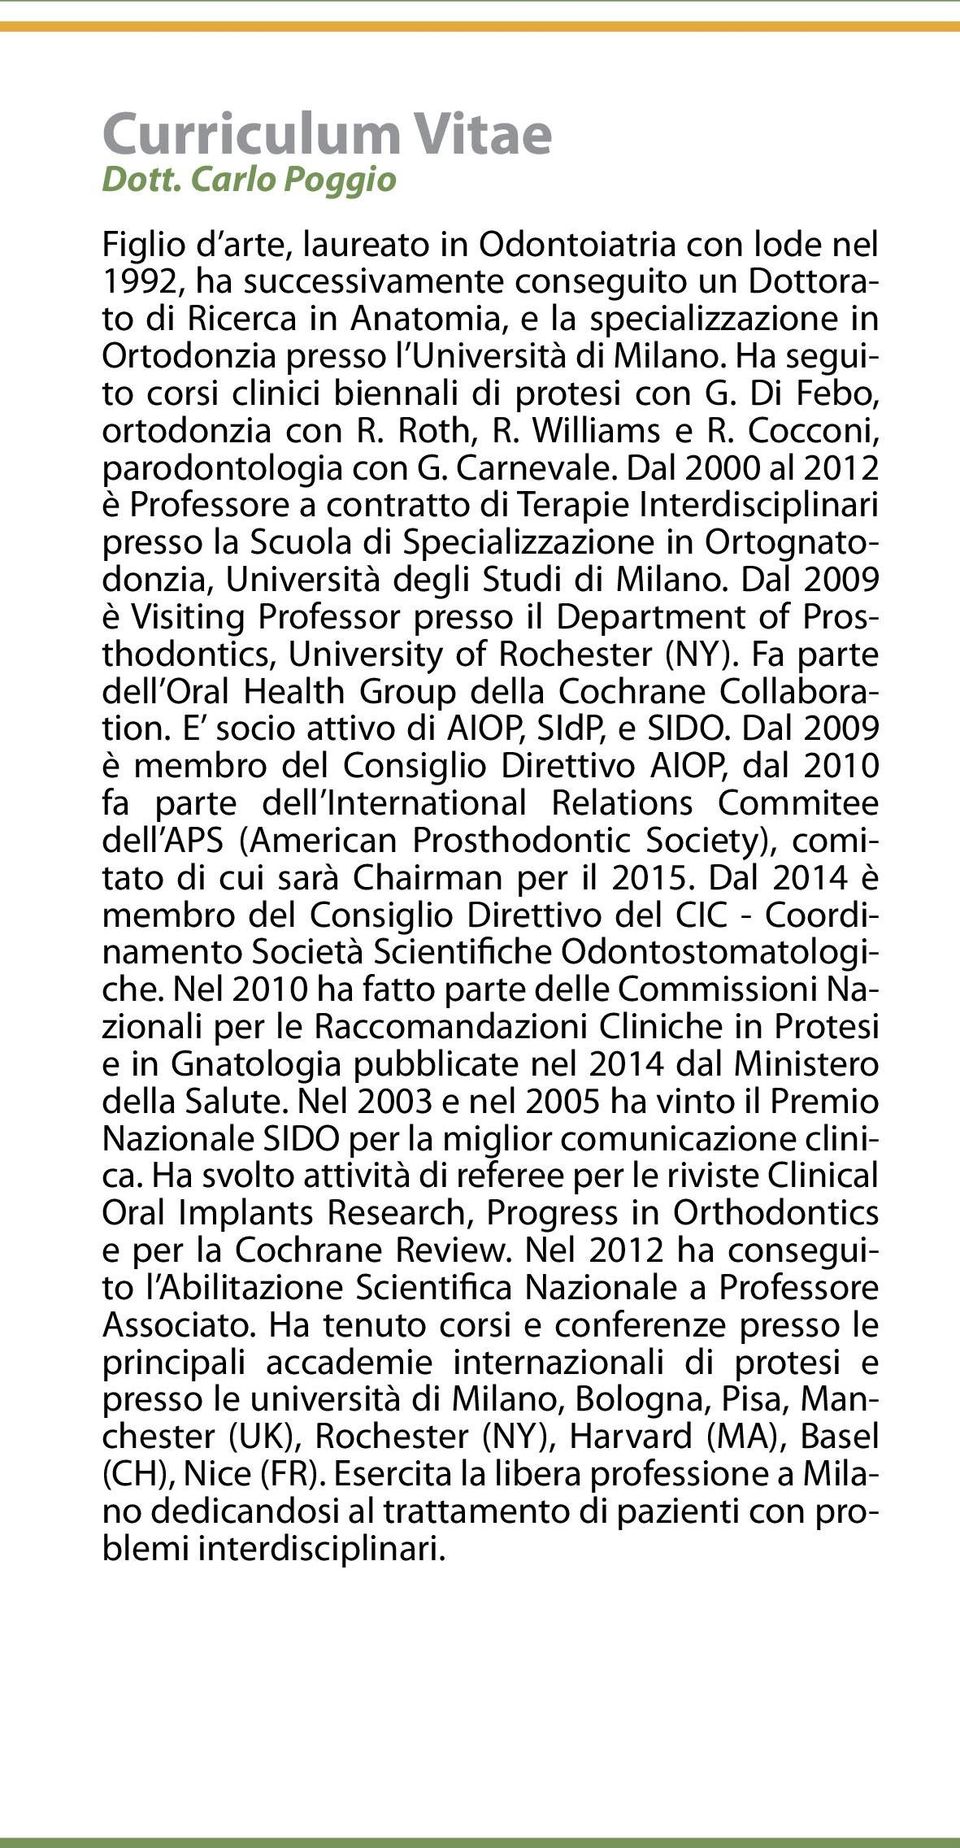 Milano. Ha seguito corsi clinici biennali di protesi con G. Di Febo, ortodonzia con R. Roth, R. Williams e R. Cocconi, parodontologia con G. Carnevale.